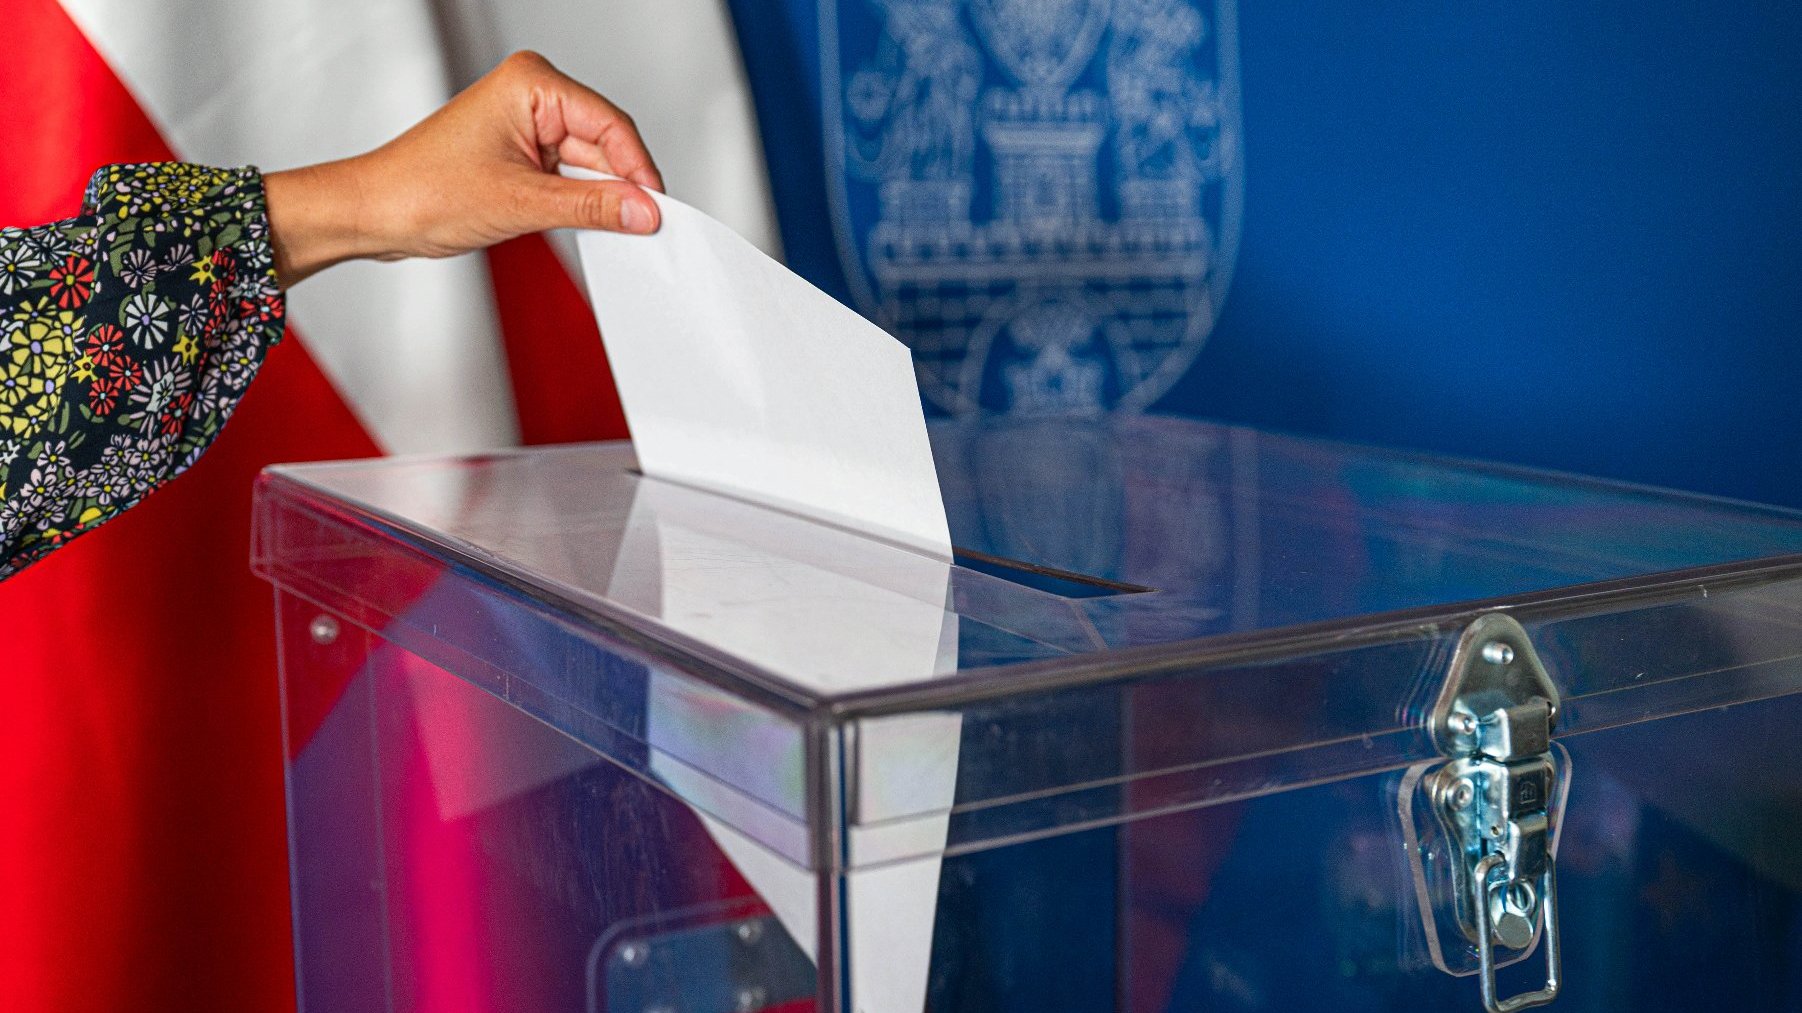 Grafika artykułu: na zdjęciu dłoń wrzucająca kartę do urny wyborczej.